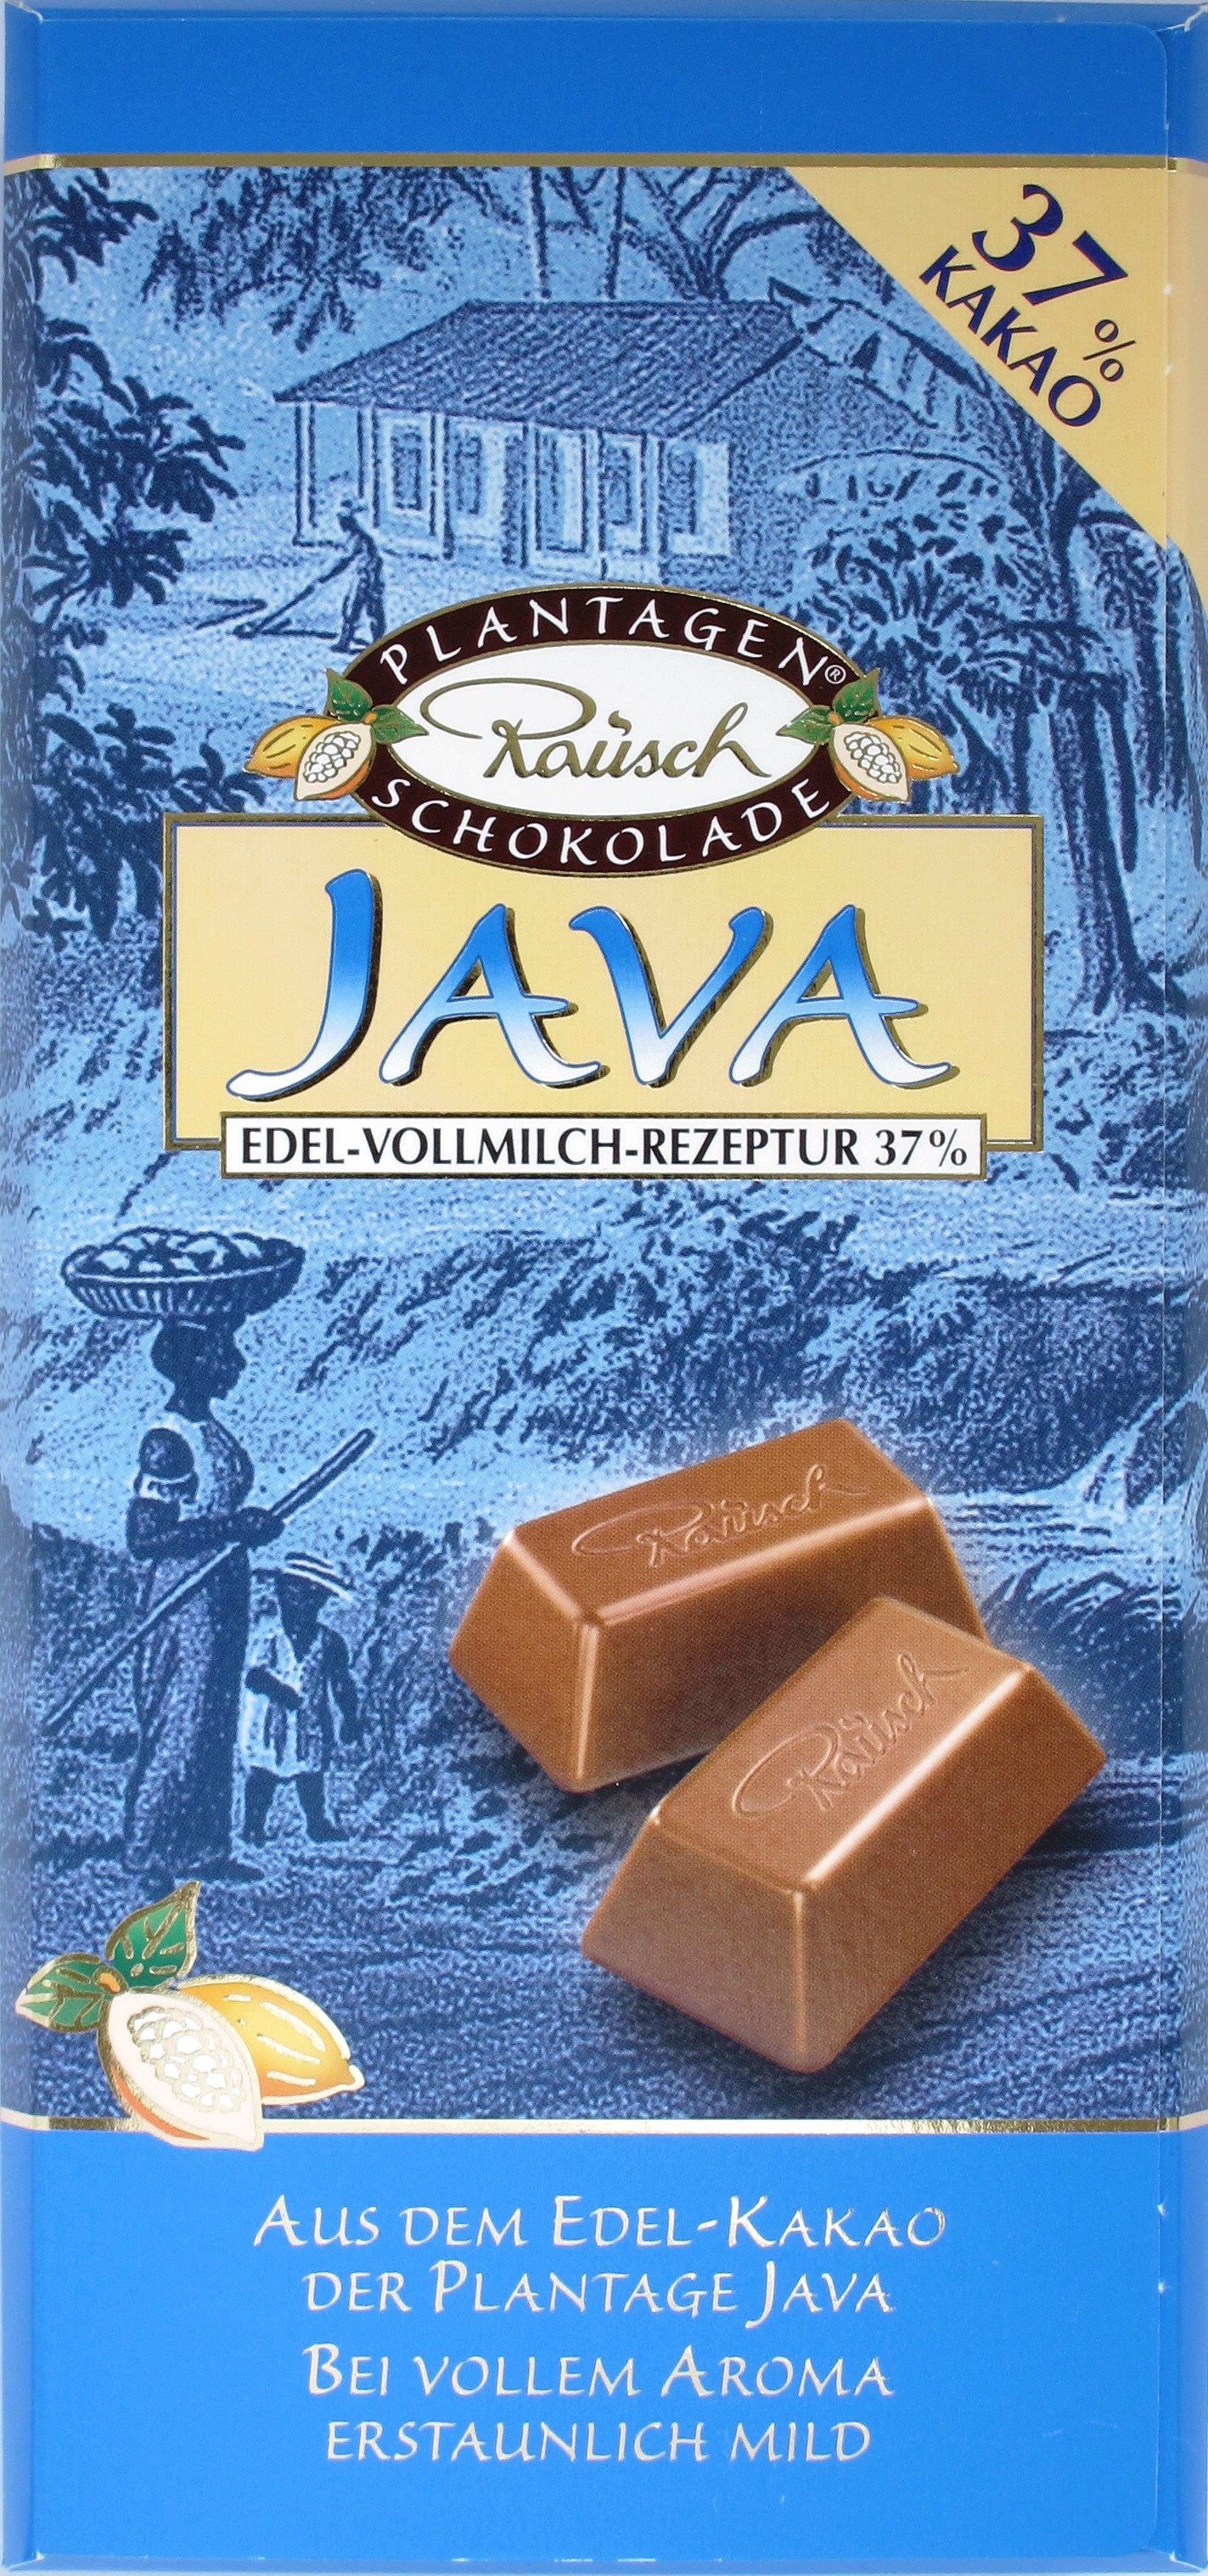 Rausch 37% Plantagenschokolade "Java"